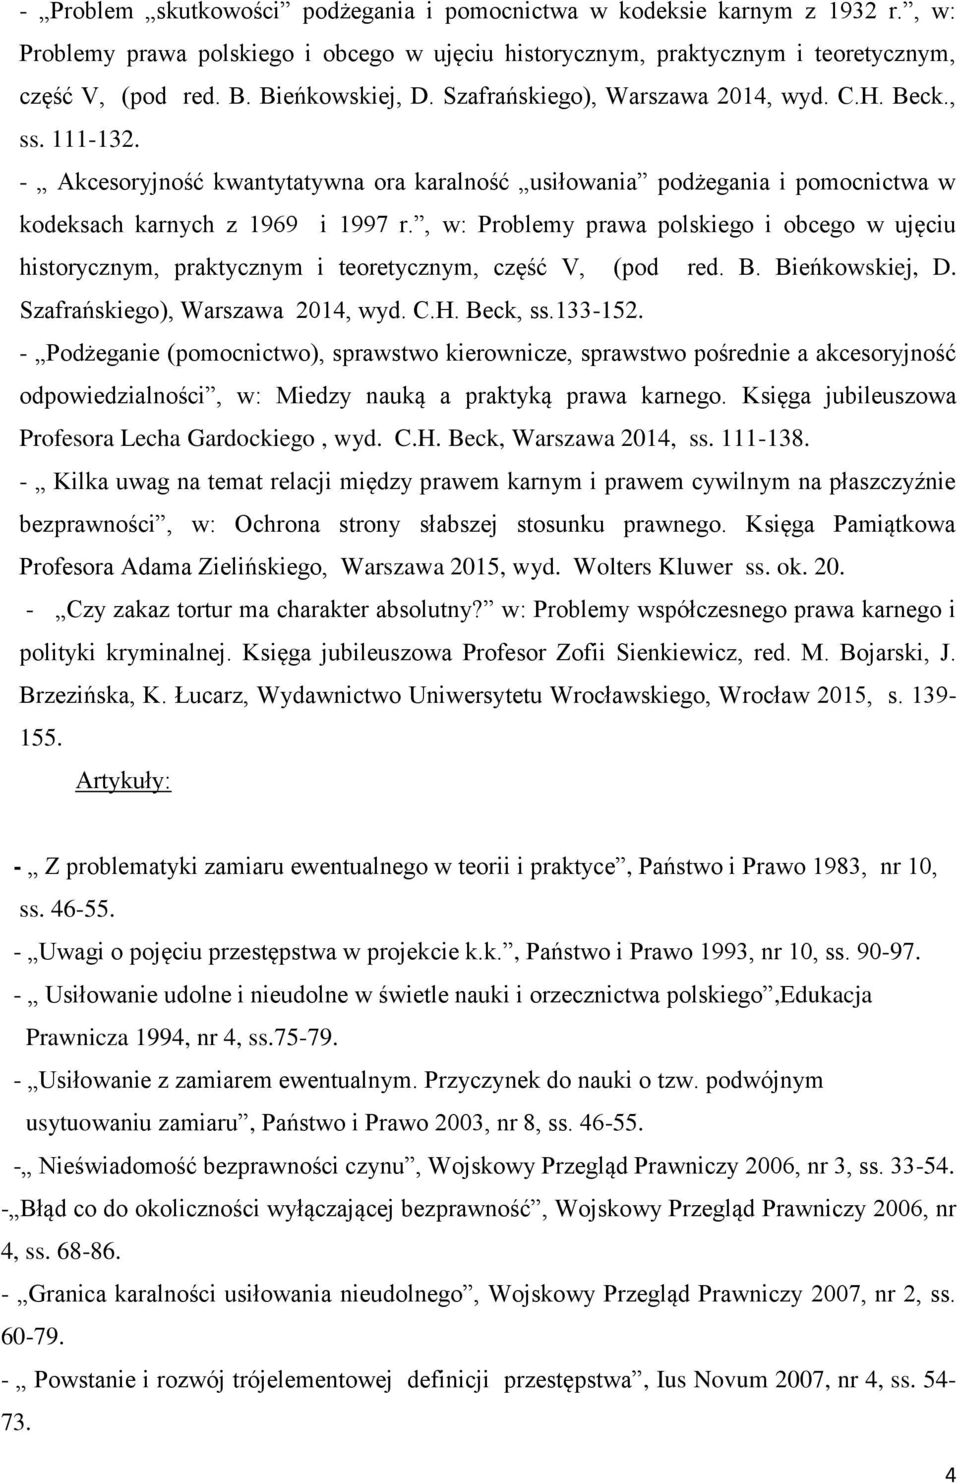 , w: Problemy prawa polskiego i obcego w ujęciu historycznym, praktycznym i teoretycznym, część V, (pod red. B. Bieńkowskiej, D. Szafrańskiego), Warszawa 2014, wyd. C.H. Beck, ss.133-152.